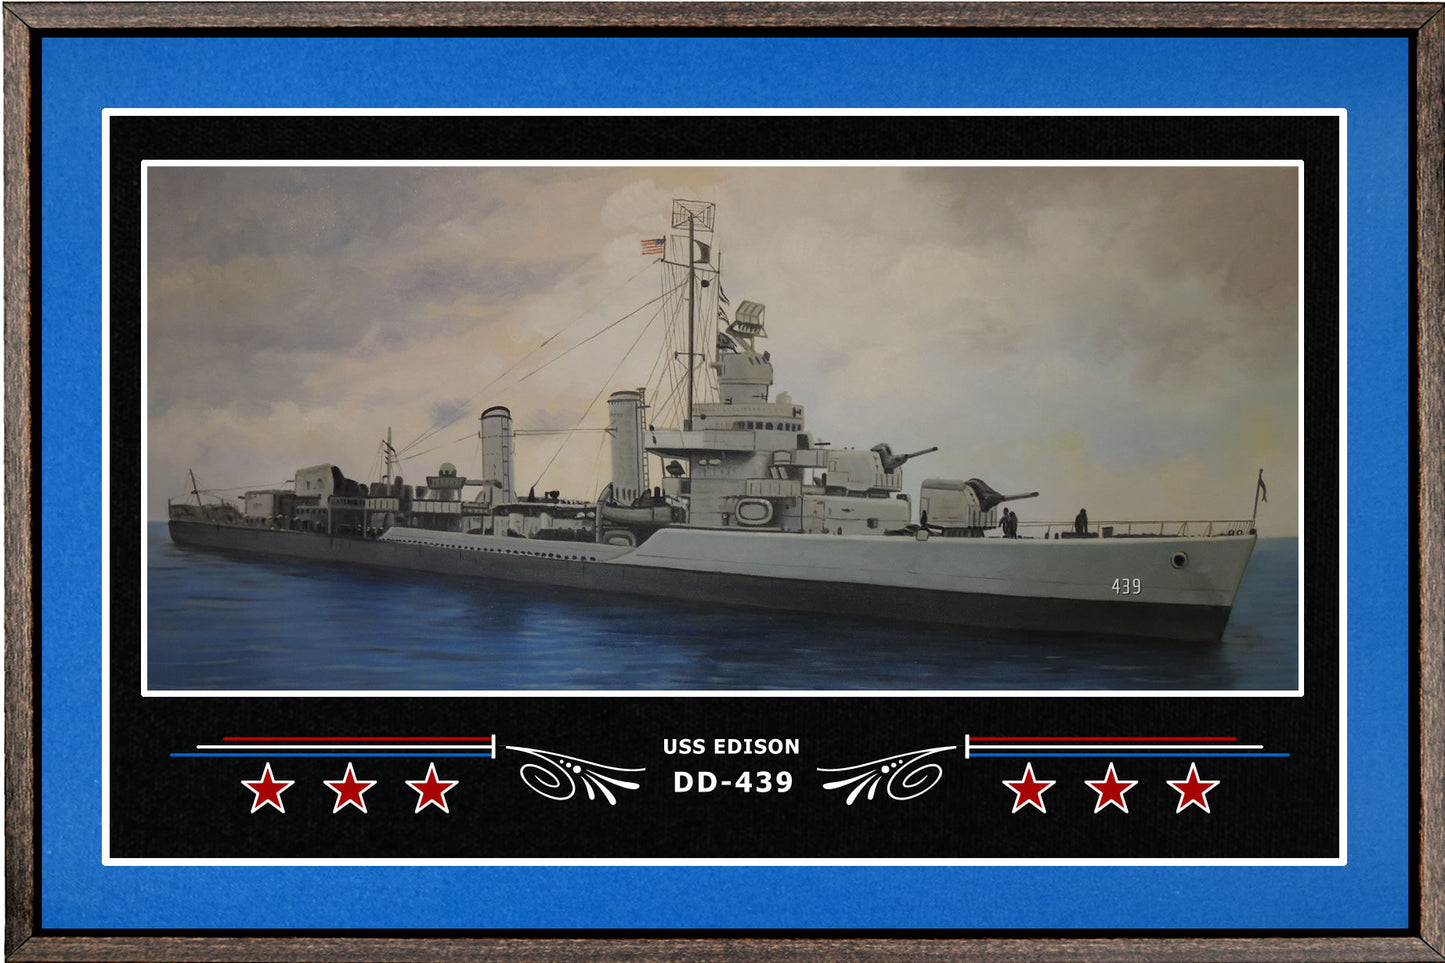 USS EDISON DD 439 BOX FRAMED CANVAS ART BLUE